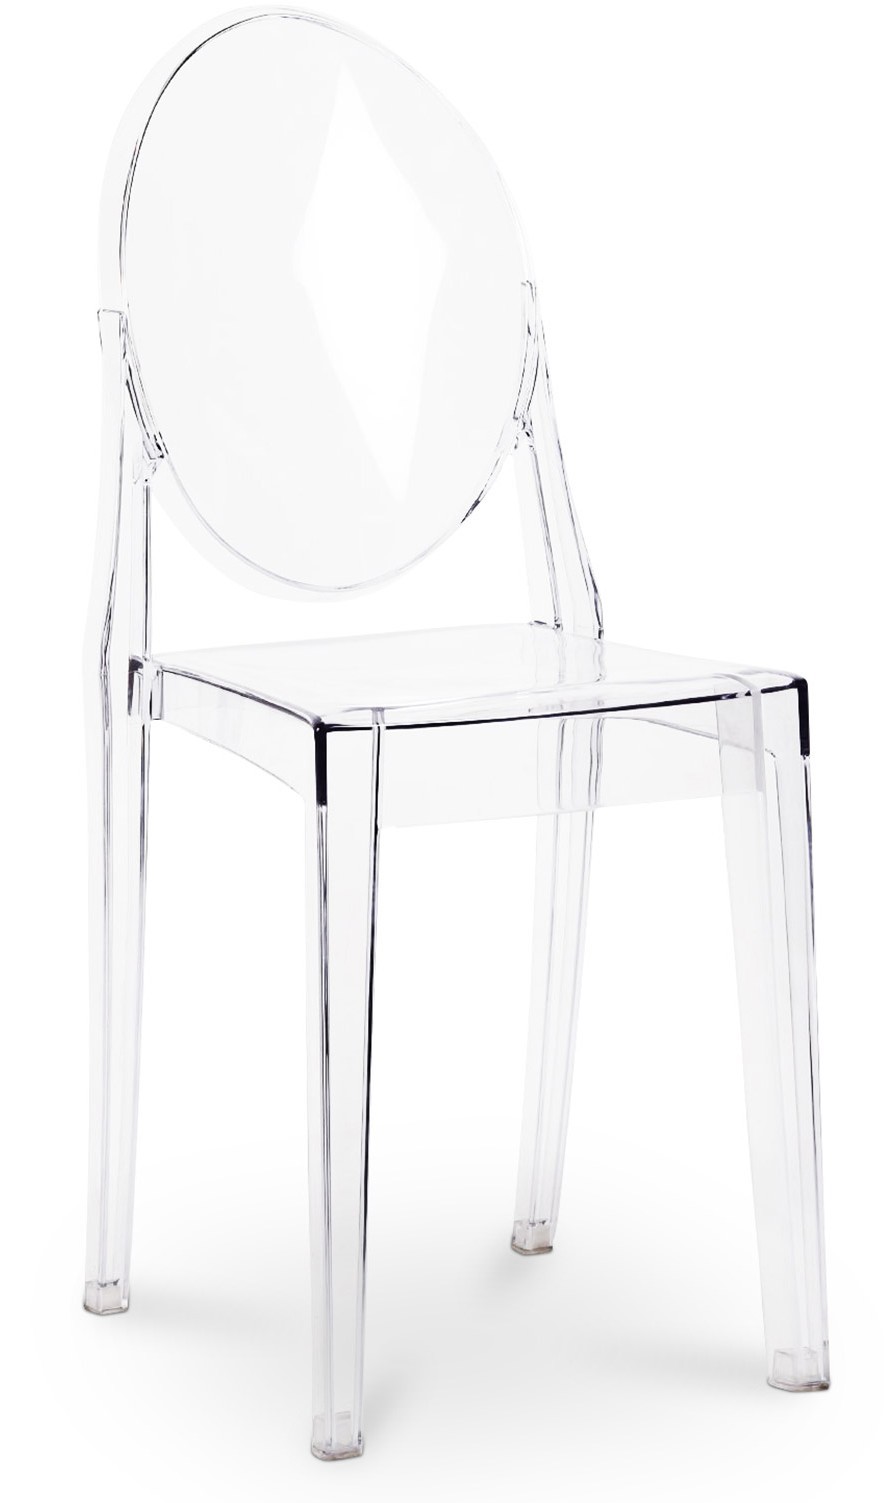 Chaise médaillon ELIZA transparente - Chaise design